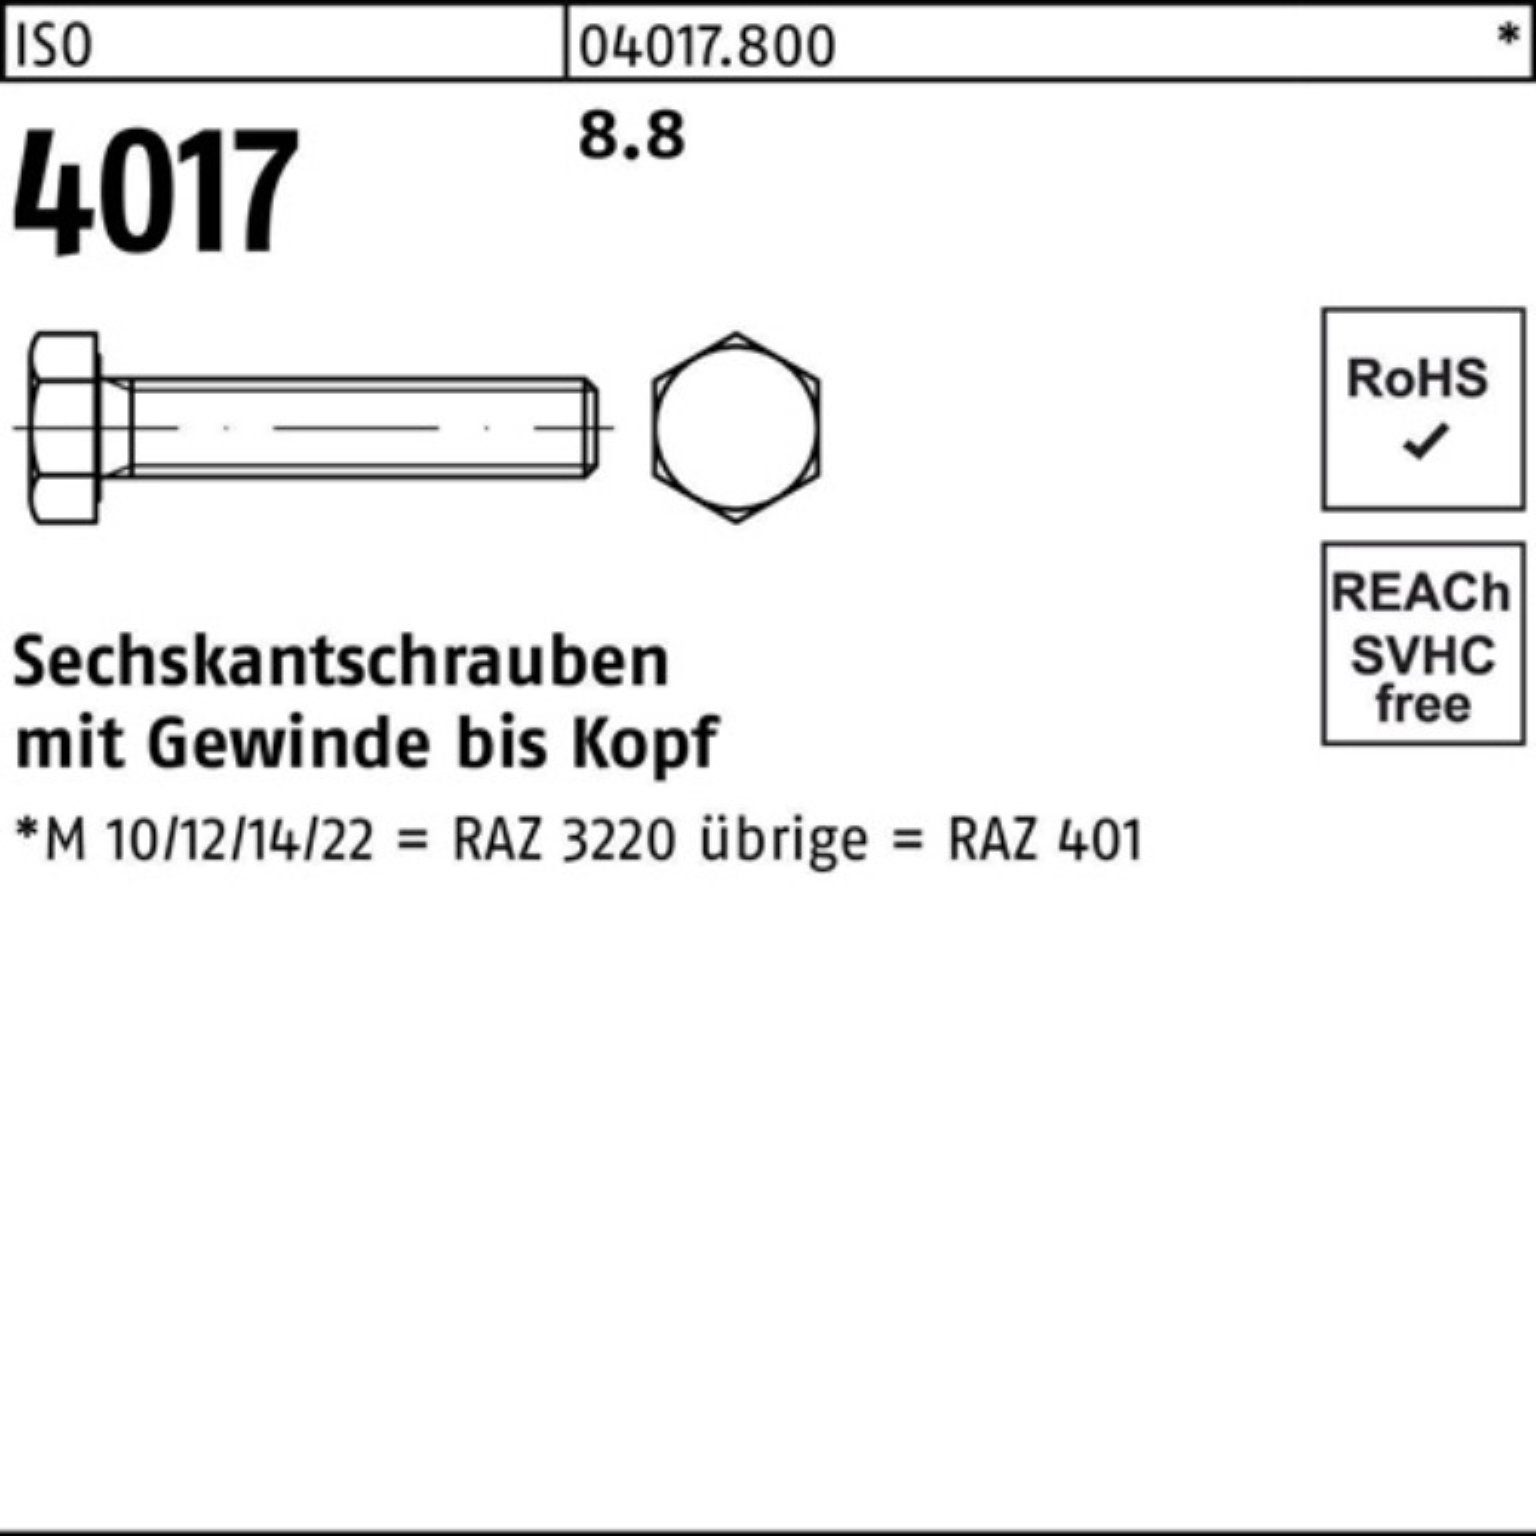 Bufab Sechskantschraube 100er Pack Sechskantschraube 1 4017 8.8 ISO Stück 401 ISO M42x VG 130